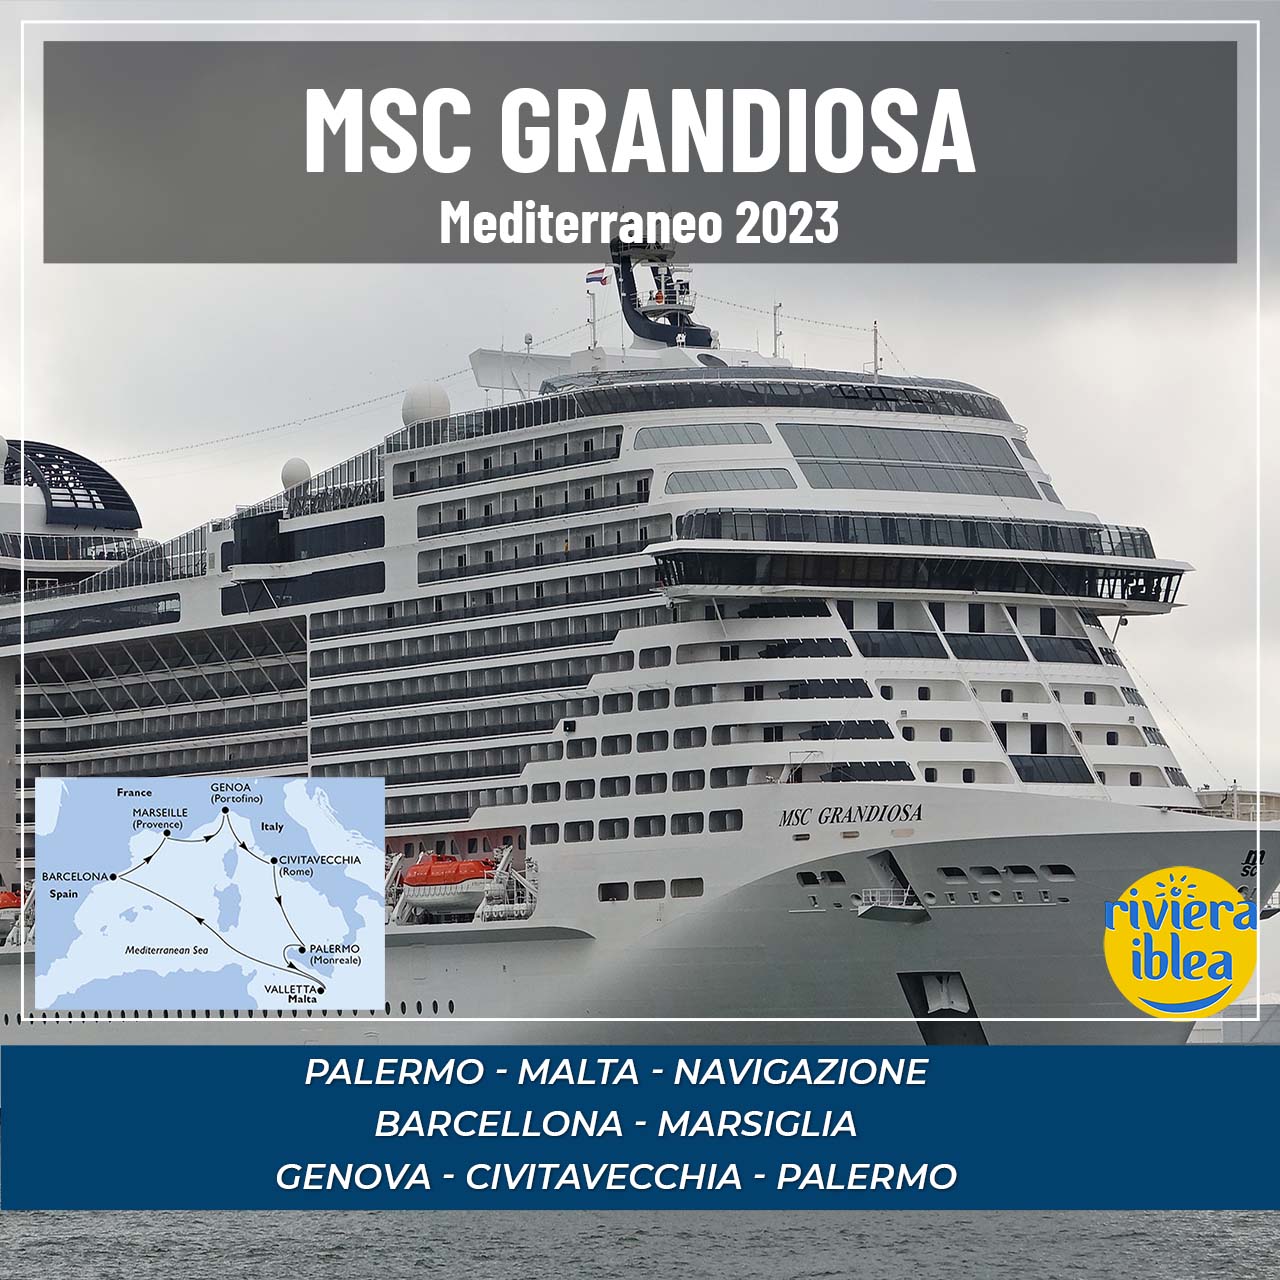 Msc Grandiosa da Palermo 2022/23